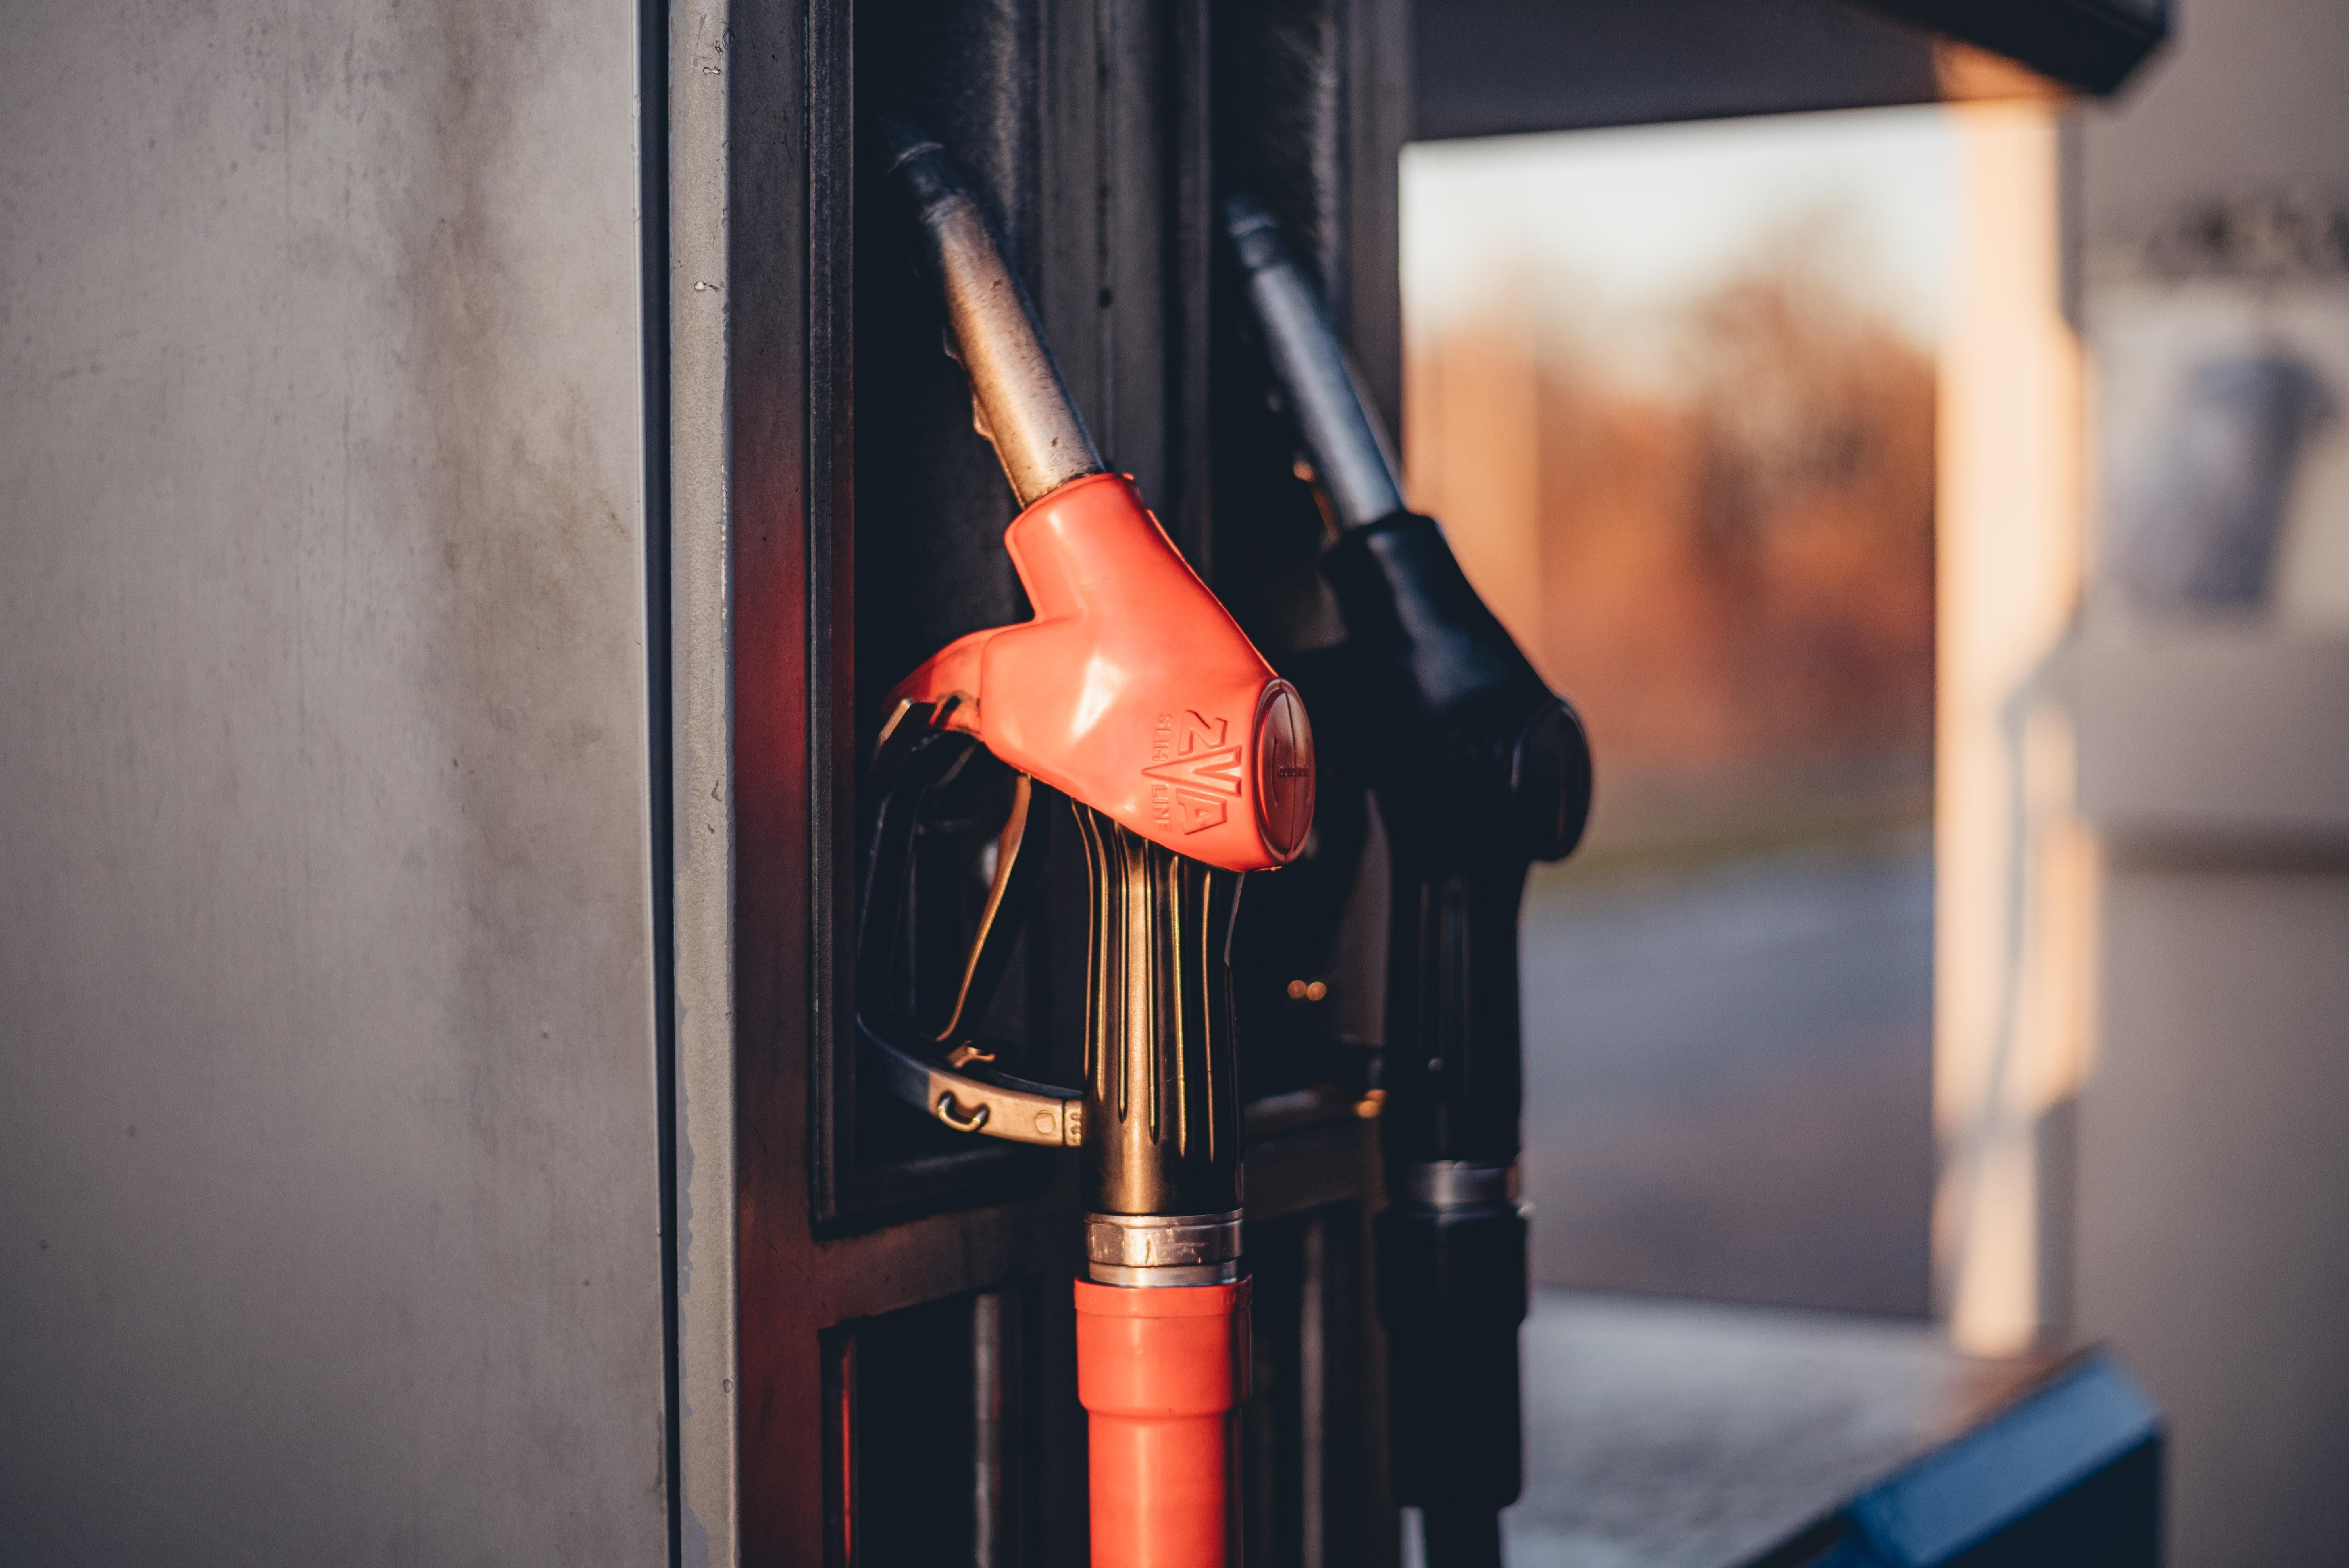 Скільки літрів бензину можна купити за середню зарплату - де найдешевший бензин